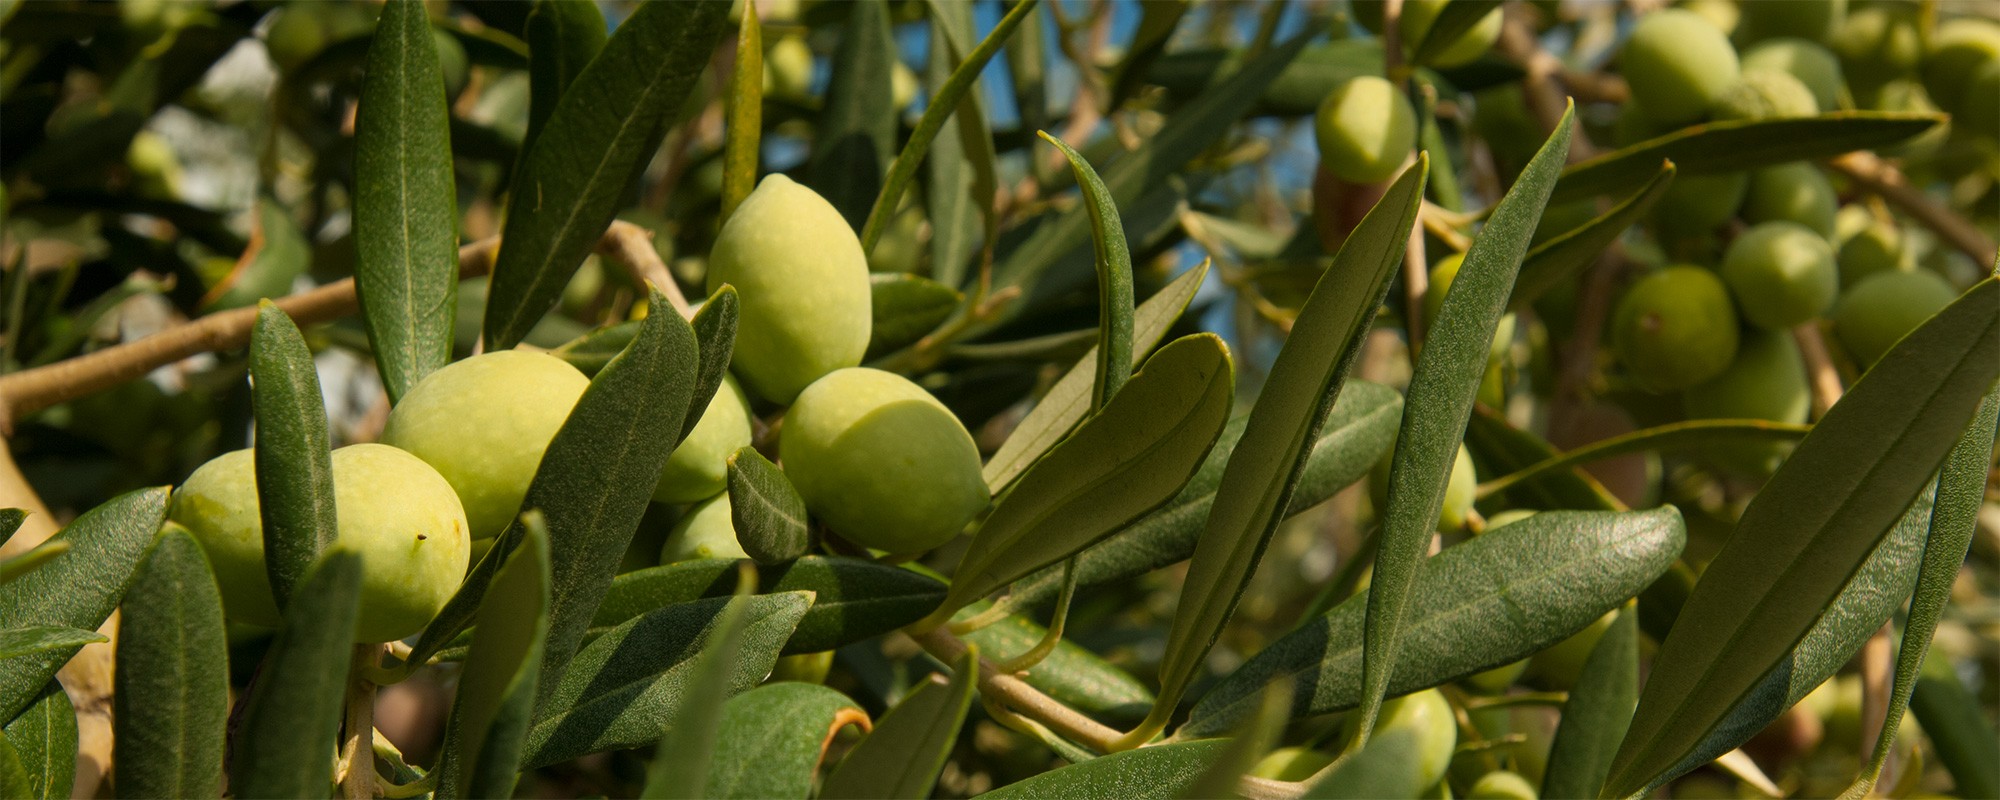 Olivenferienwohnungsizilienferienparcoverde02ger0068s